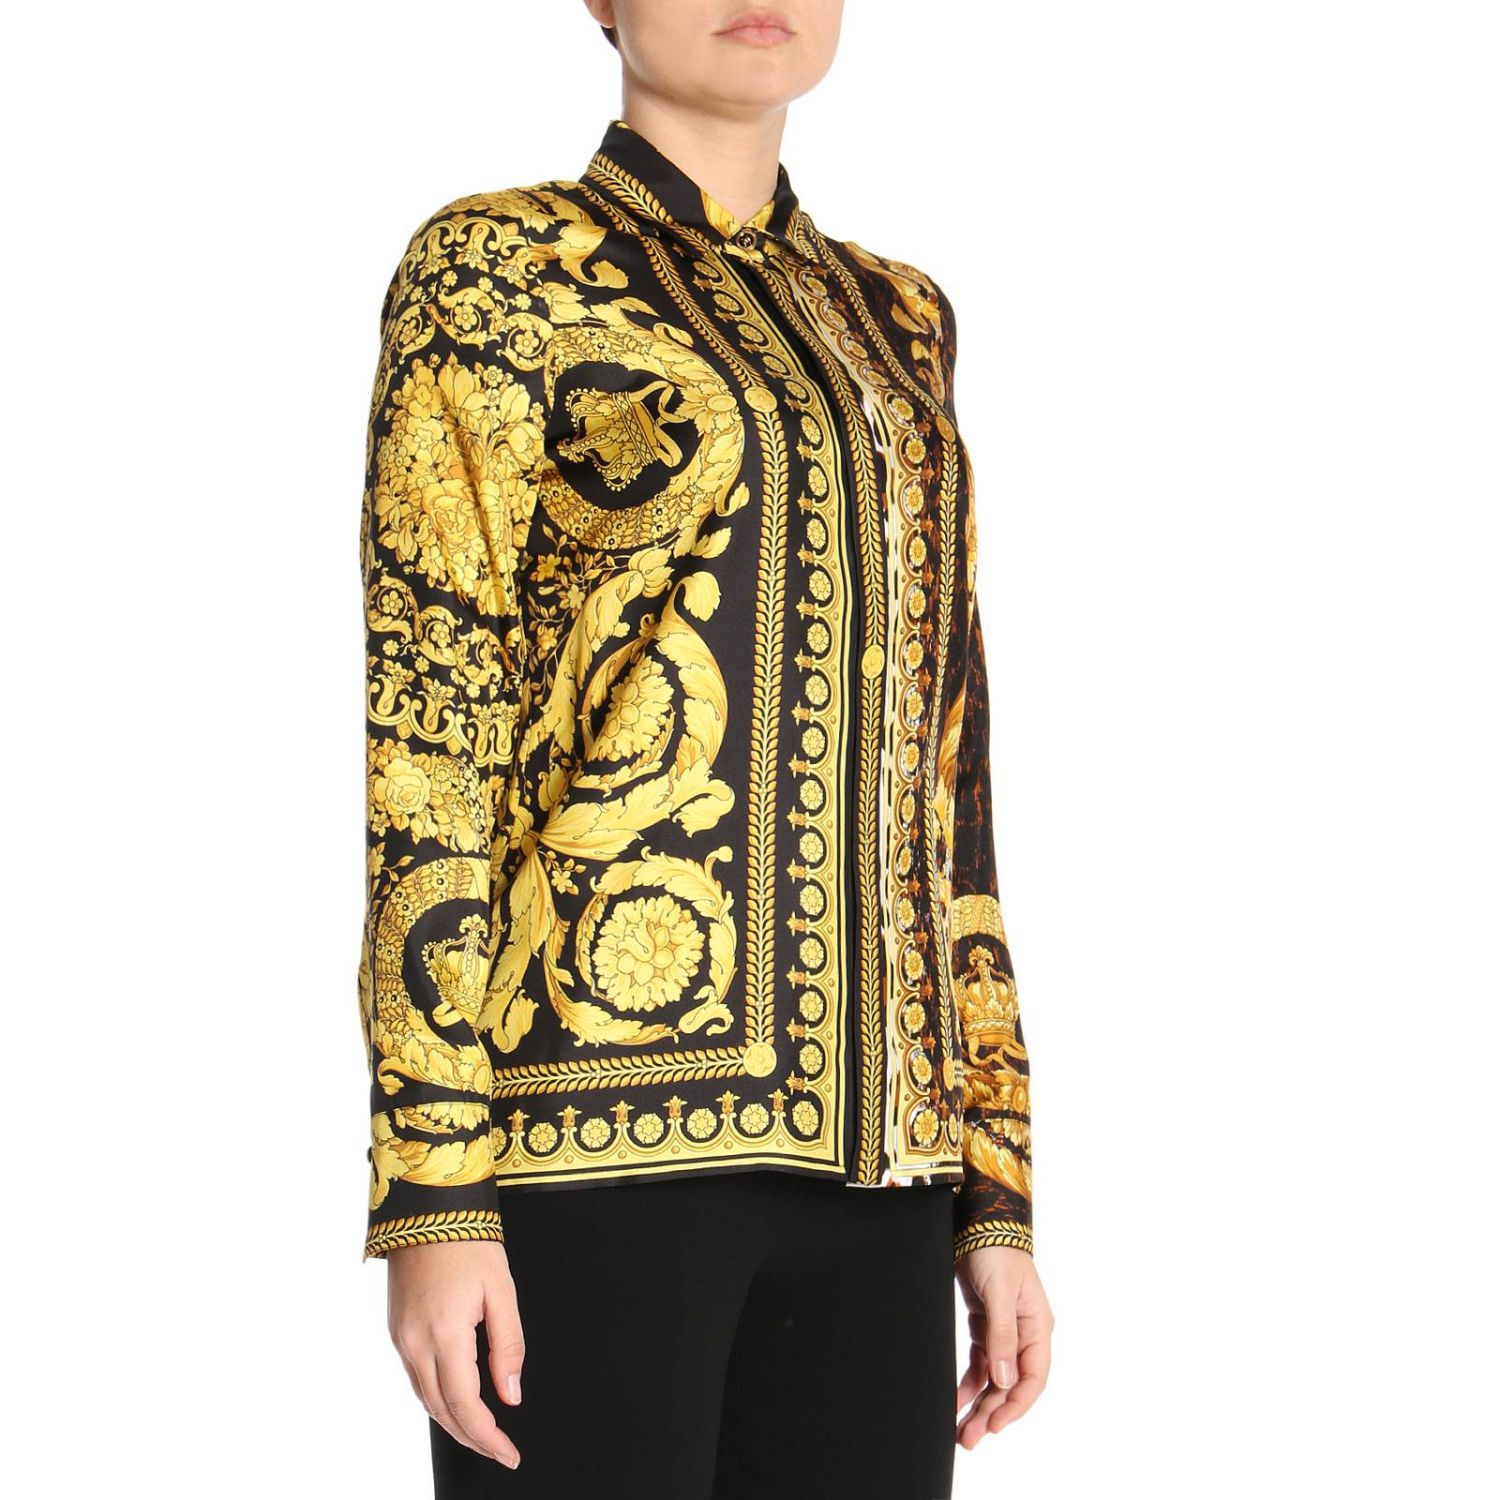 VERSACE: Shirt women | Shirt Versace Women Gold | Shirt Versace A79153 ...